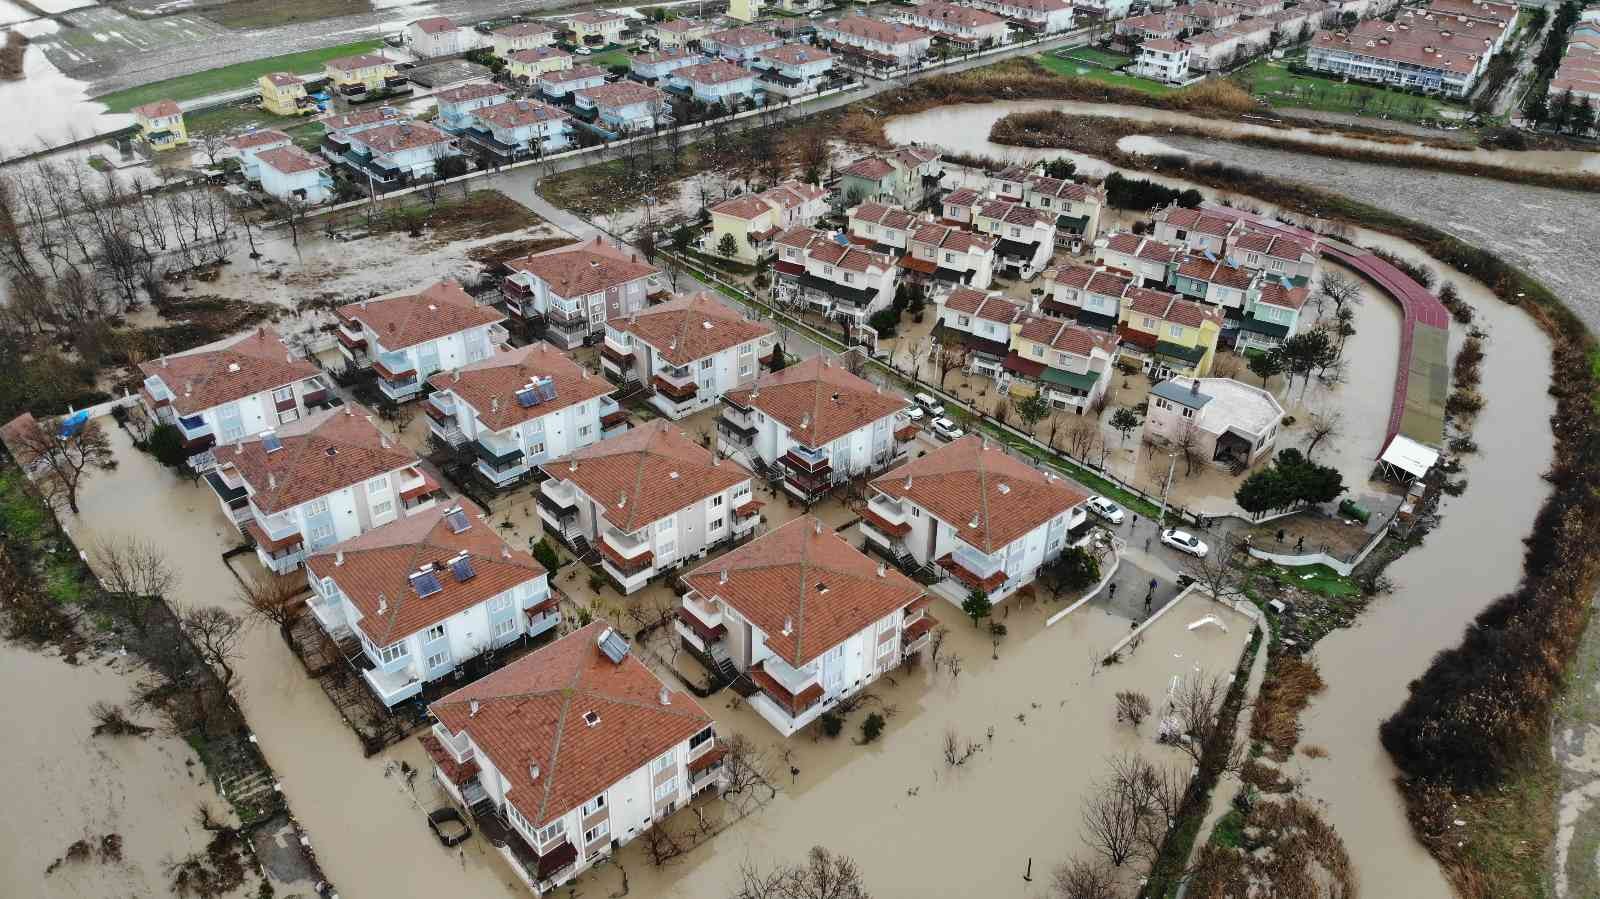 İnanılmaz görüntüler, evler sel sularına gömüldü #edirne